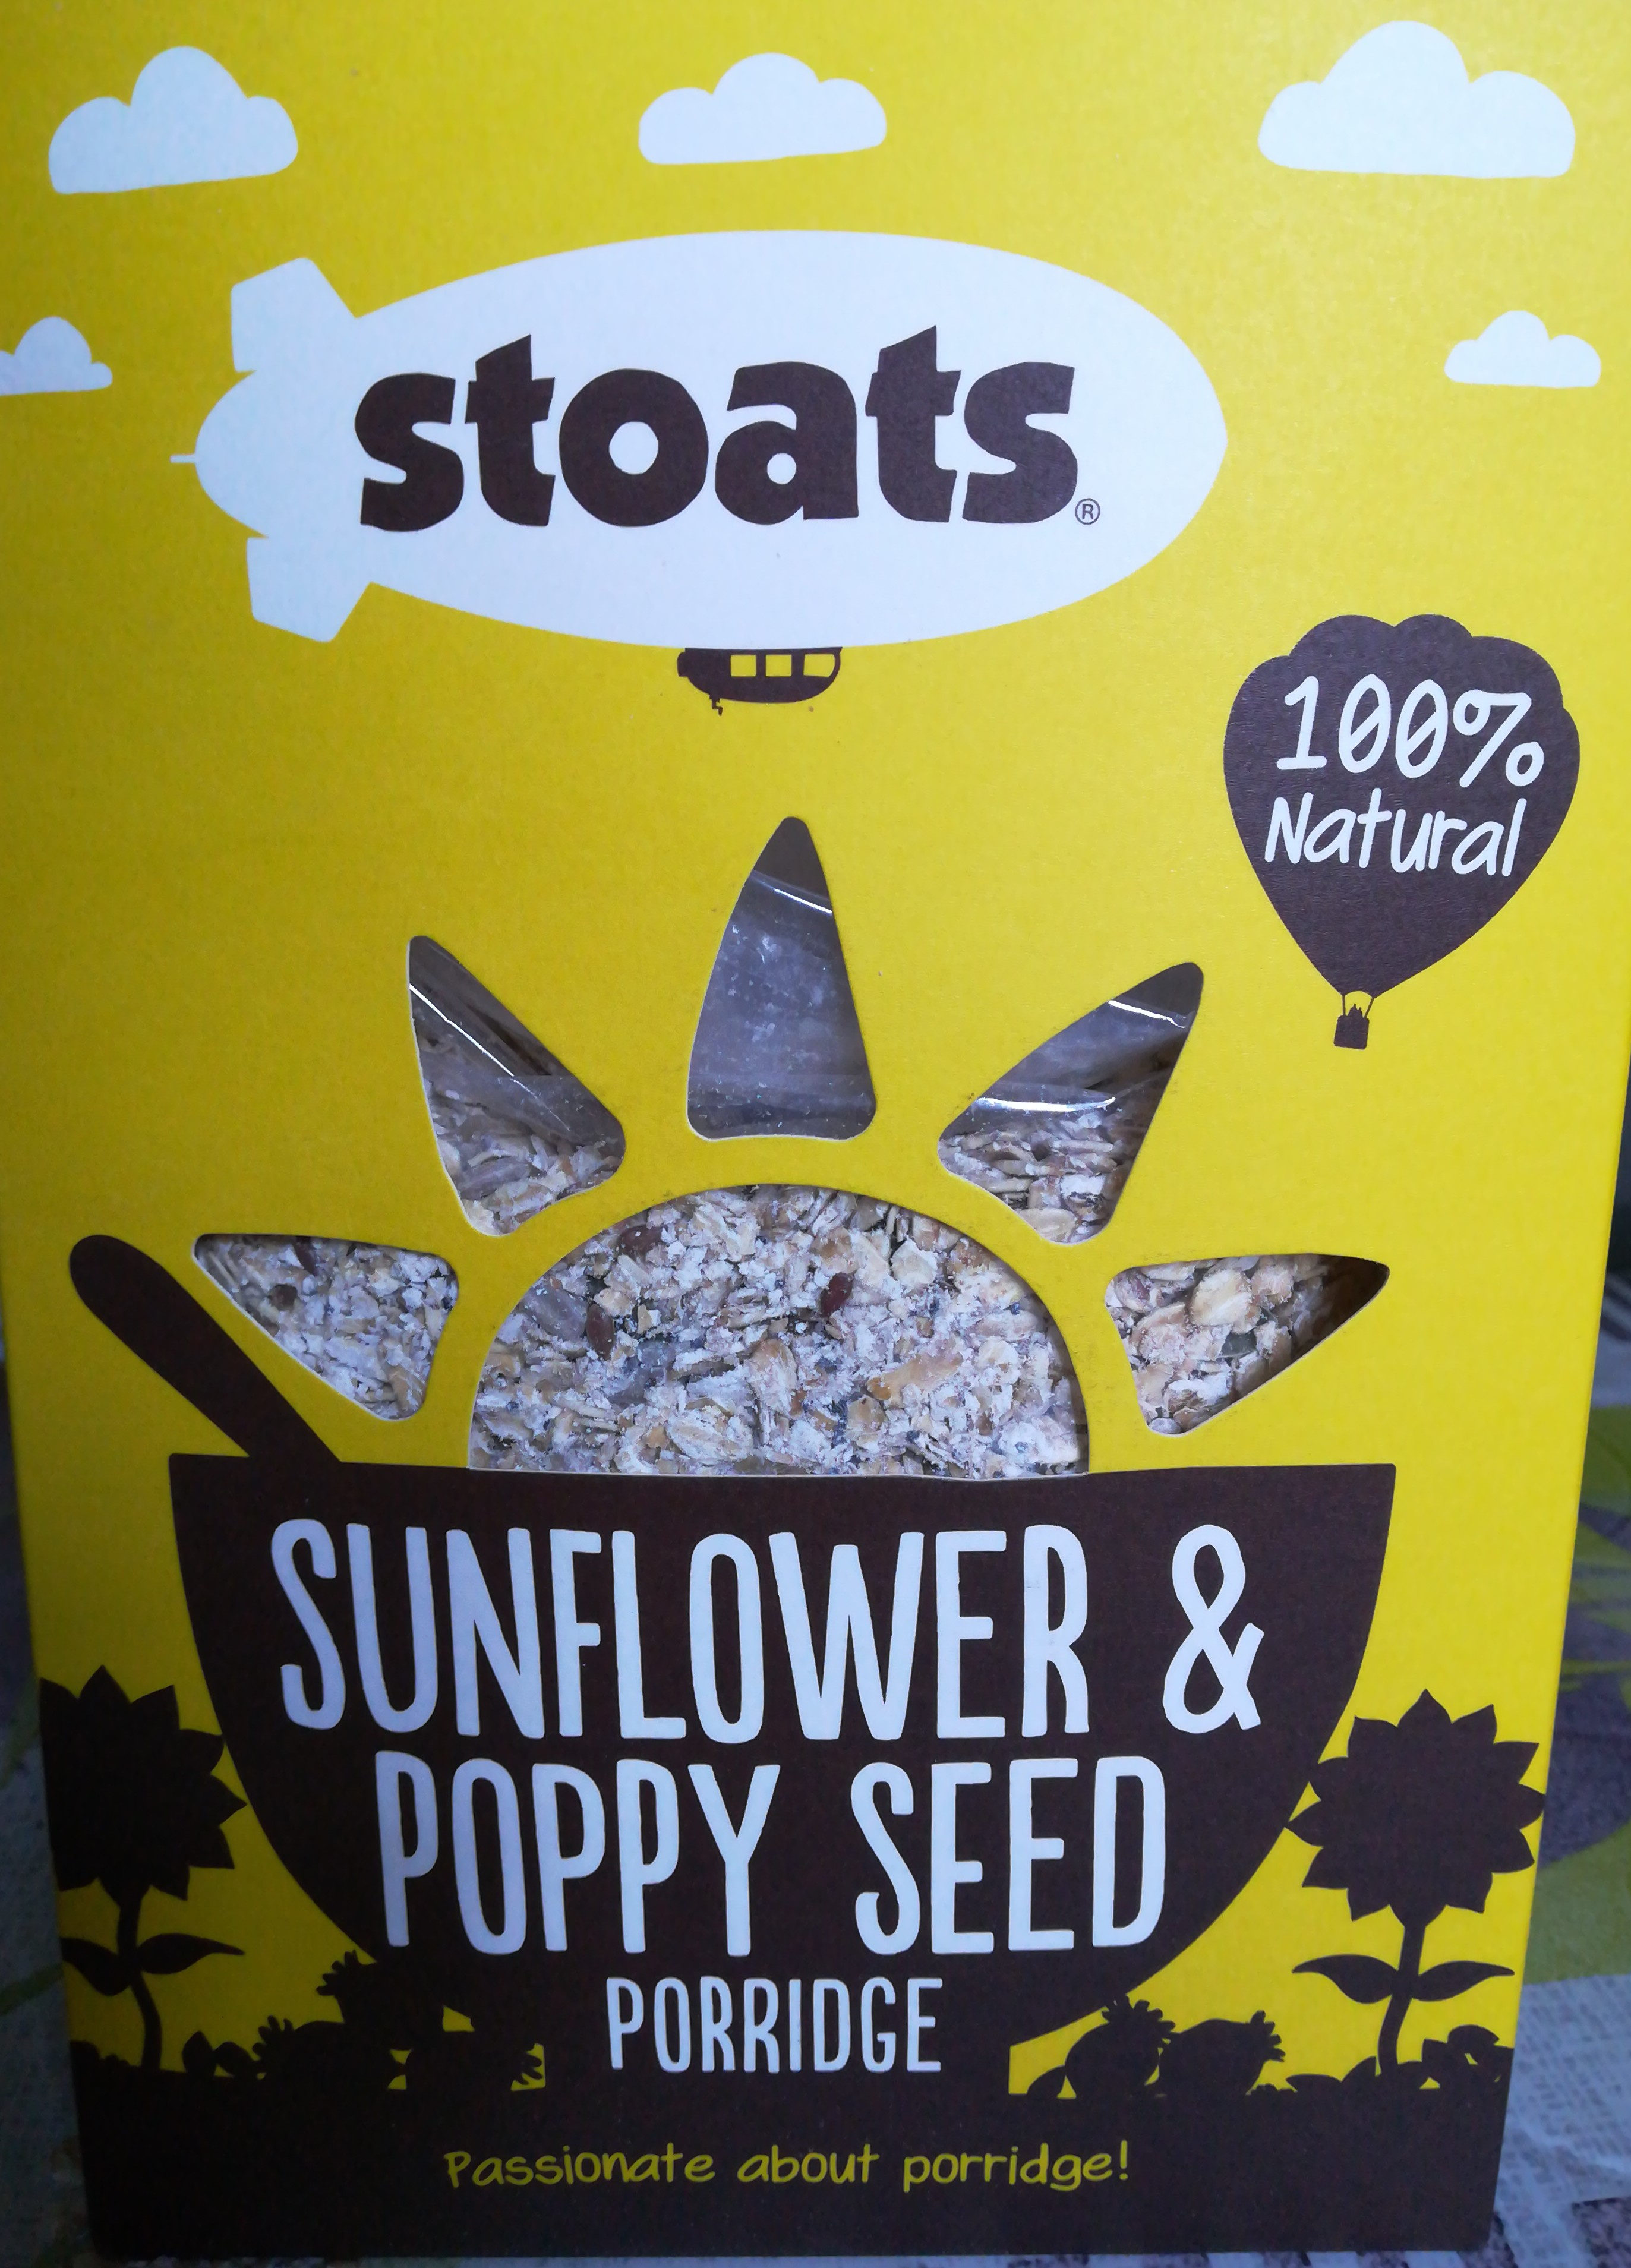 sunflower&poppy seed porridge - Product